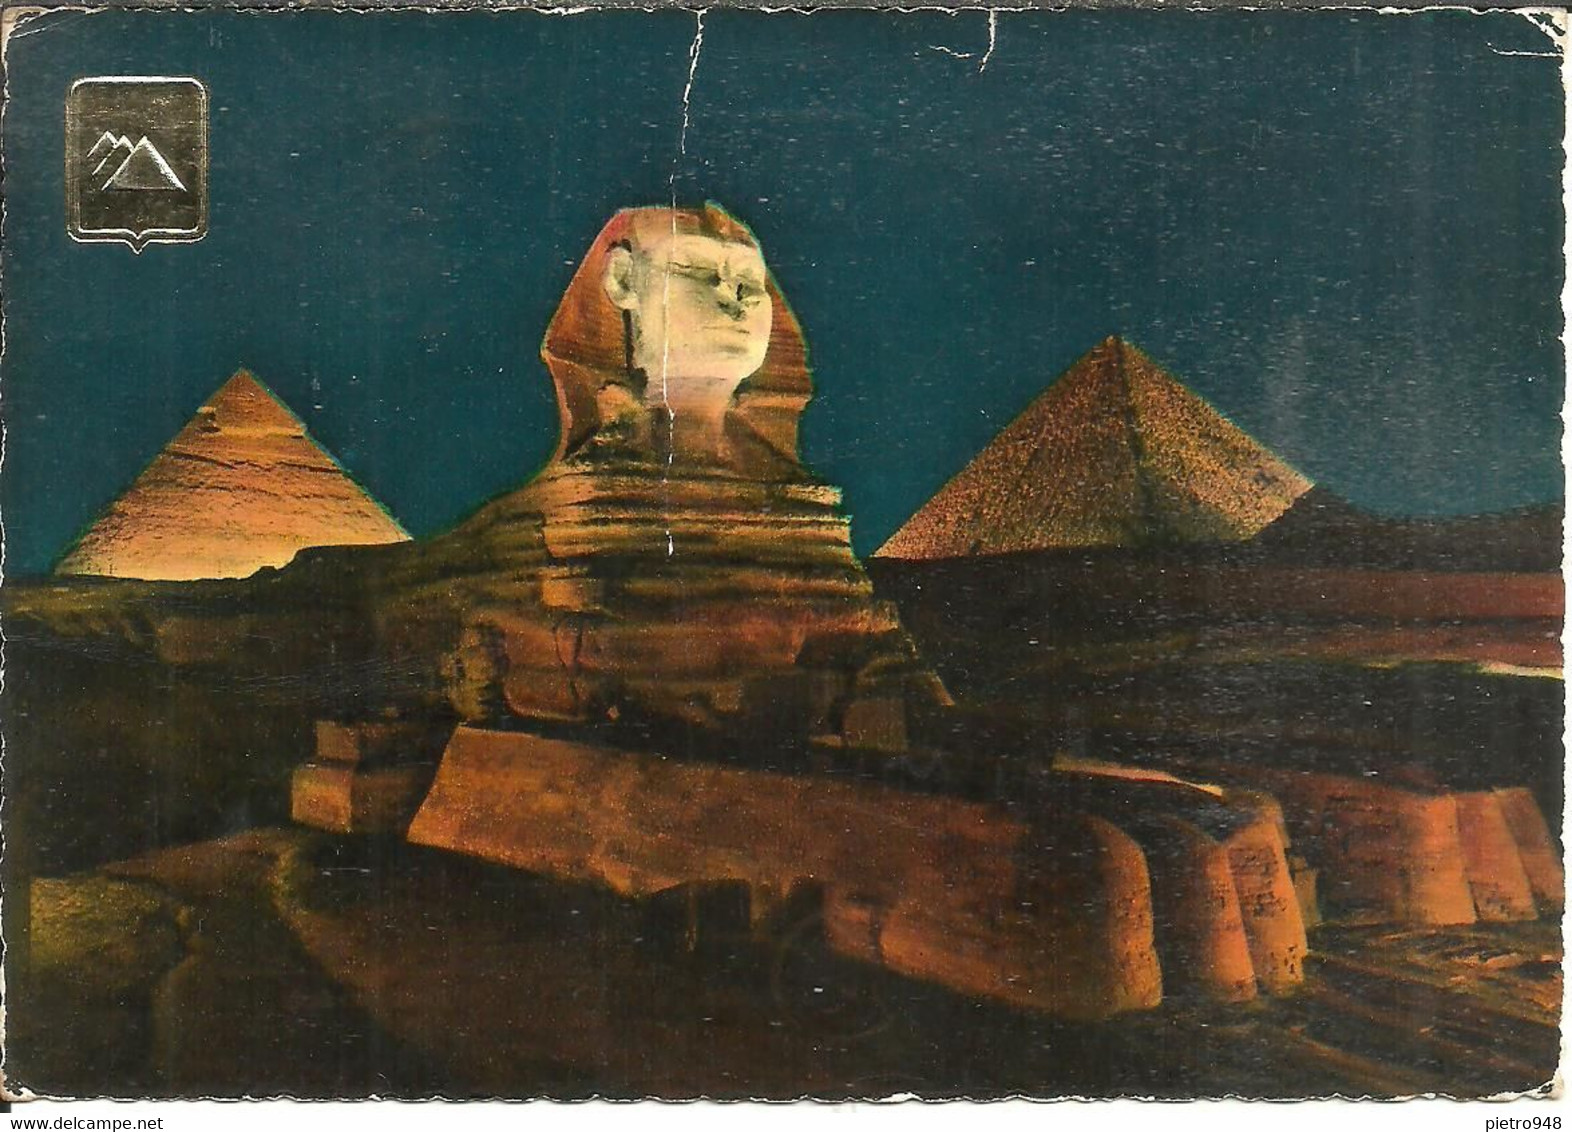 Giza (Egitto, Egypt) The Great Sphinx And Pyramids By Night, Sfinge E Piramidi, Notturno, La Nuit - Sphinx